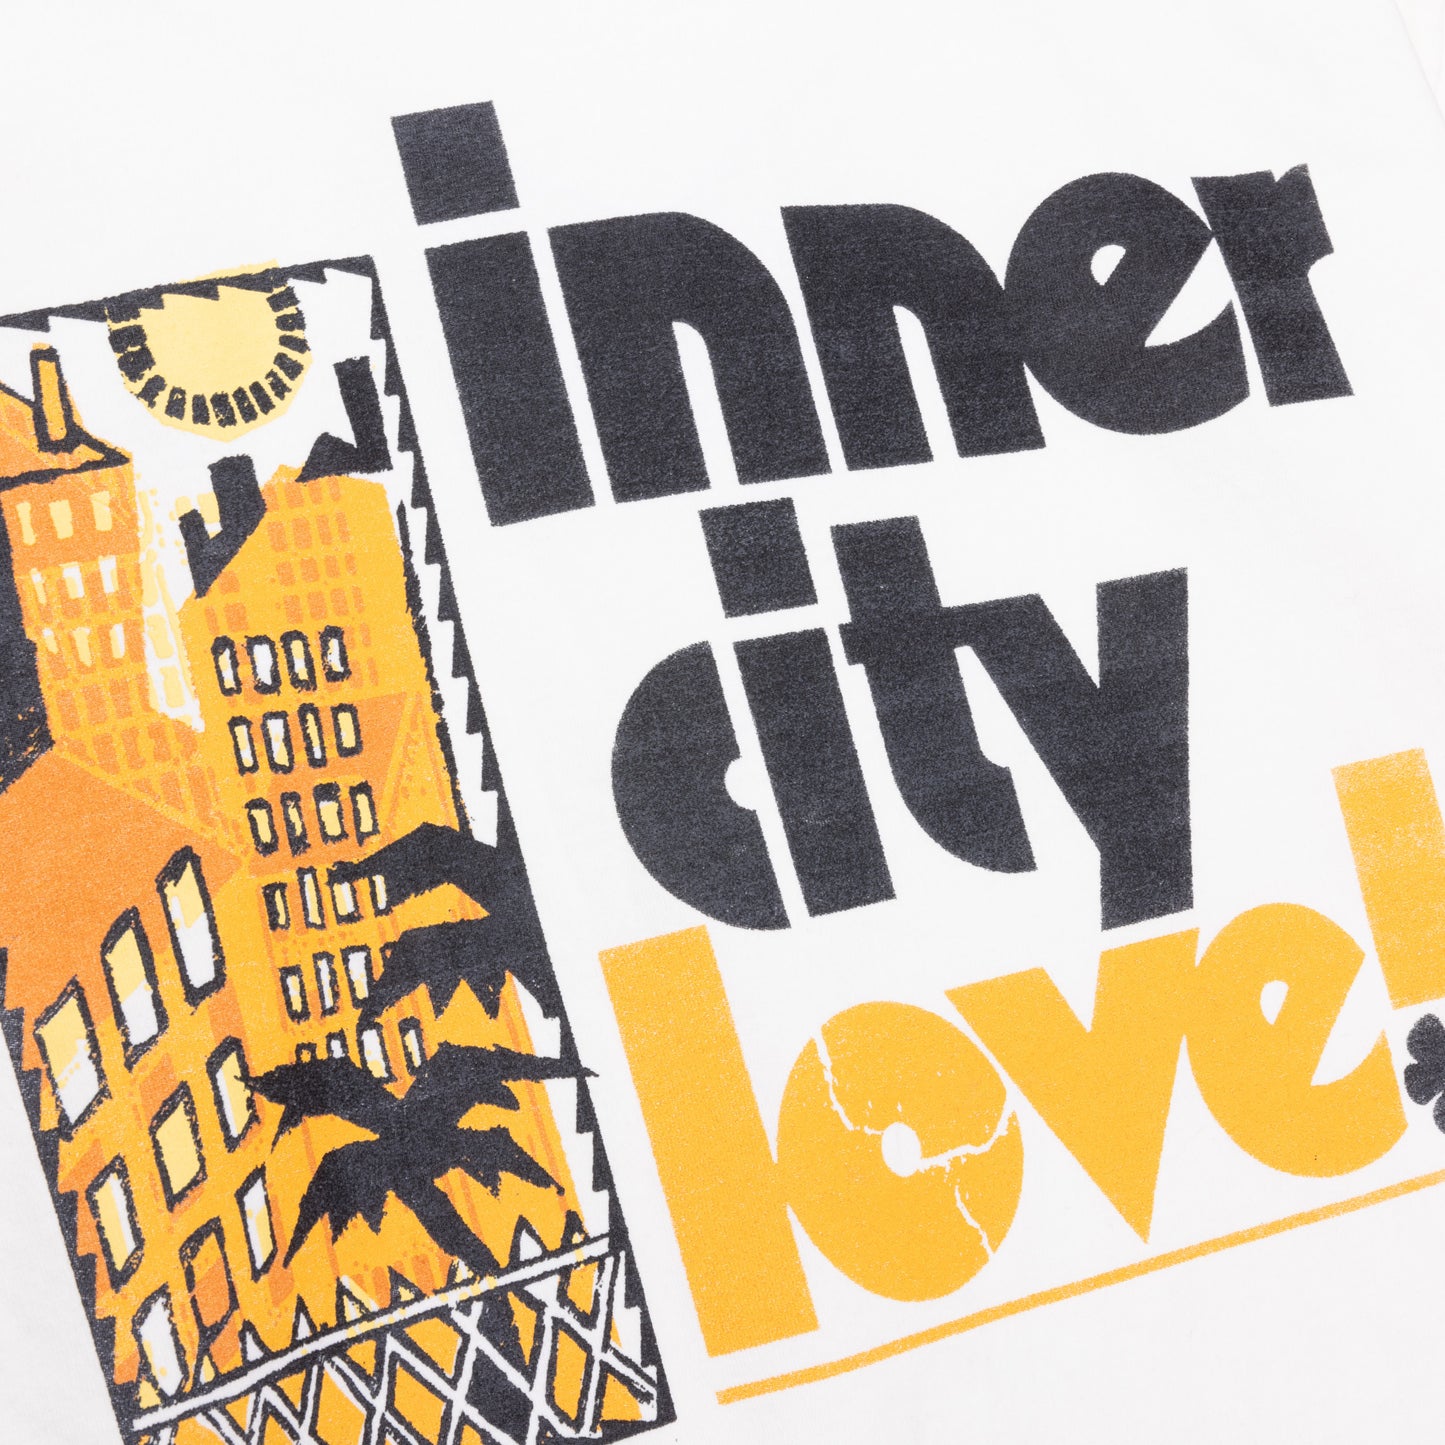 Inner City Love 2.0 T-Shirt